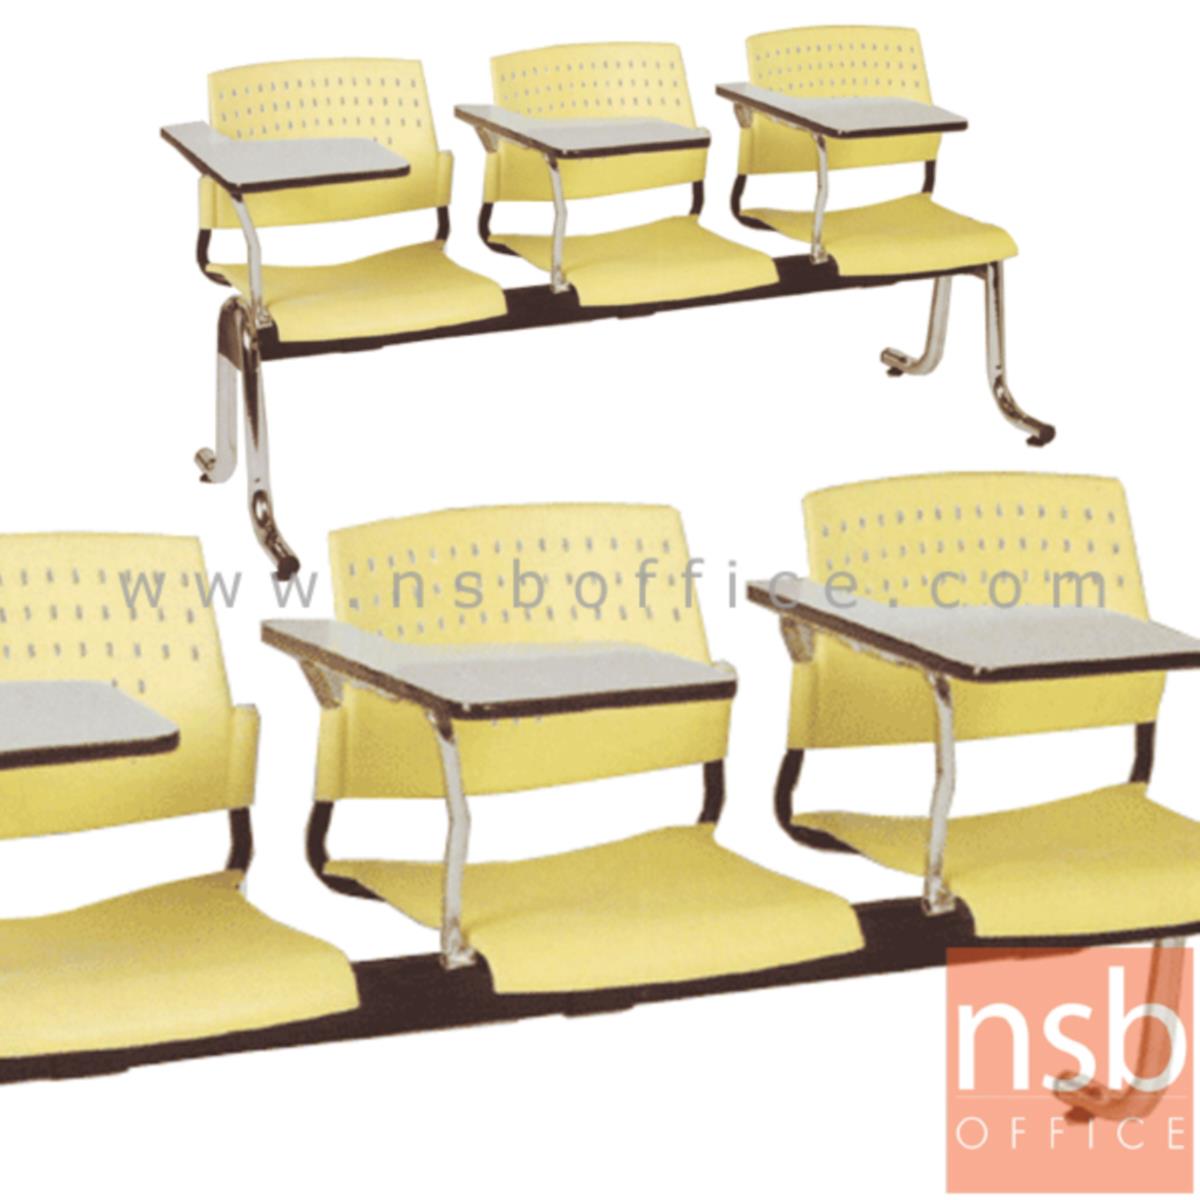 B17A016:เก้าอี้เลคเชอร์แถวเฟรมโพลี่  รุ่น D226 2 ,3 และ 4 ที่นั่ง ขาเหล็กชุบโครเมี่ยม